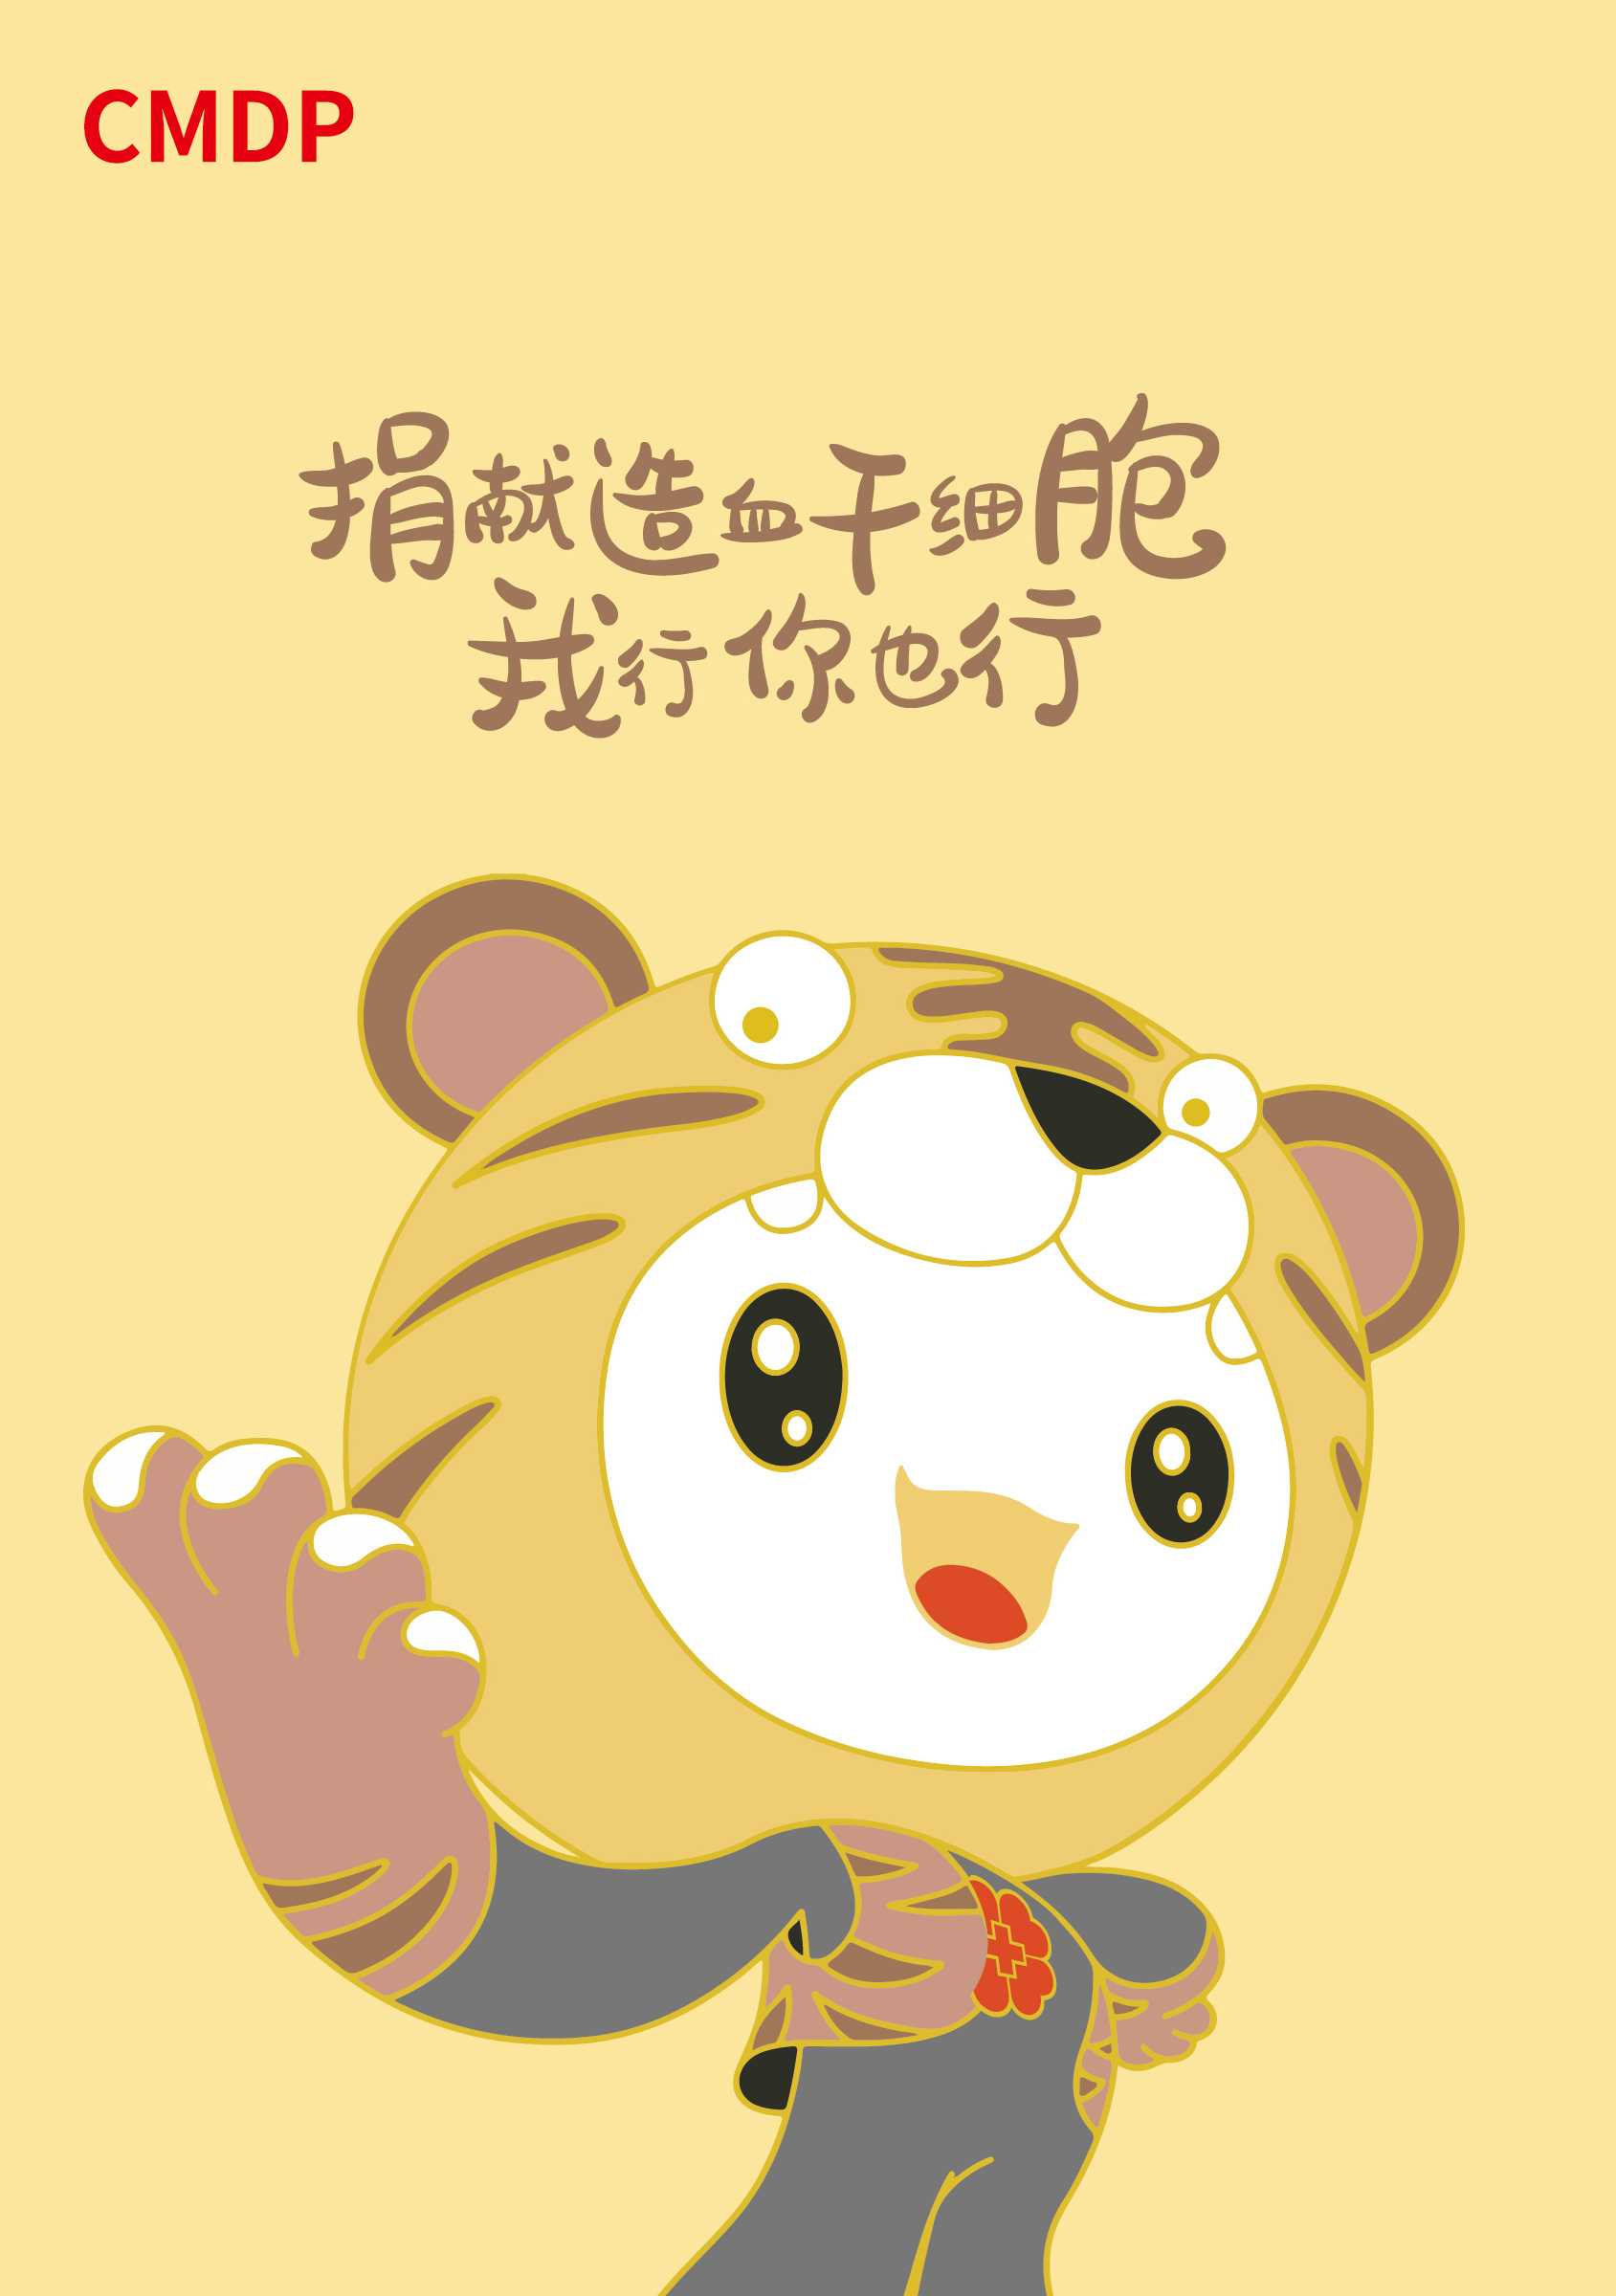 中华骨髓库发布十二生肖卡通形象宣传海报 下载中心 第3张